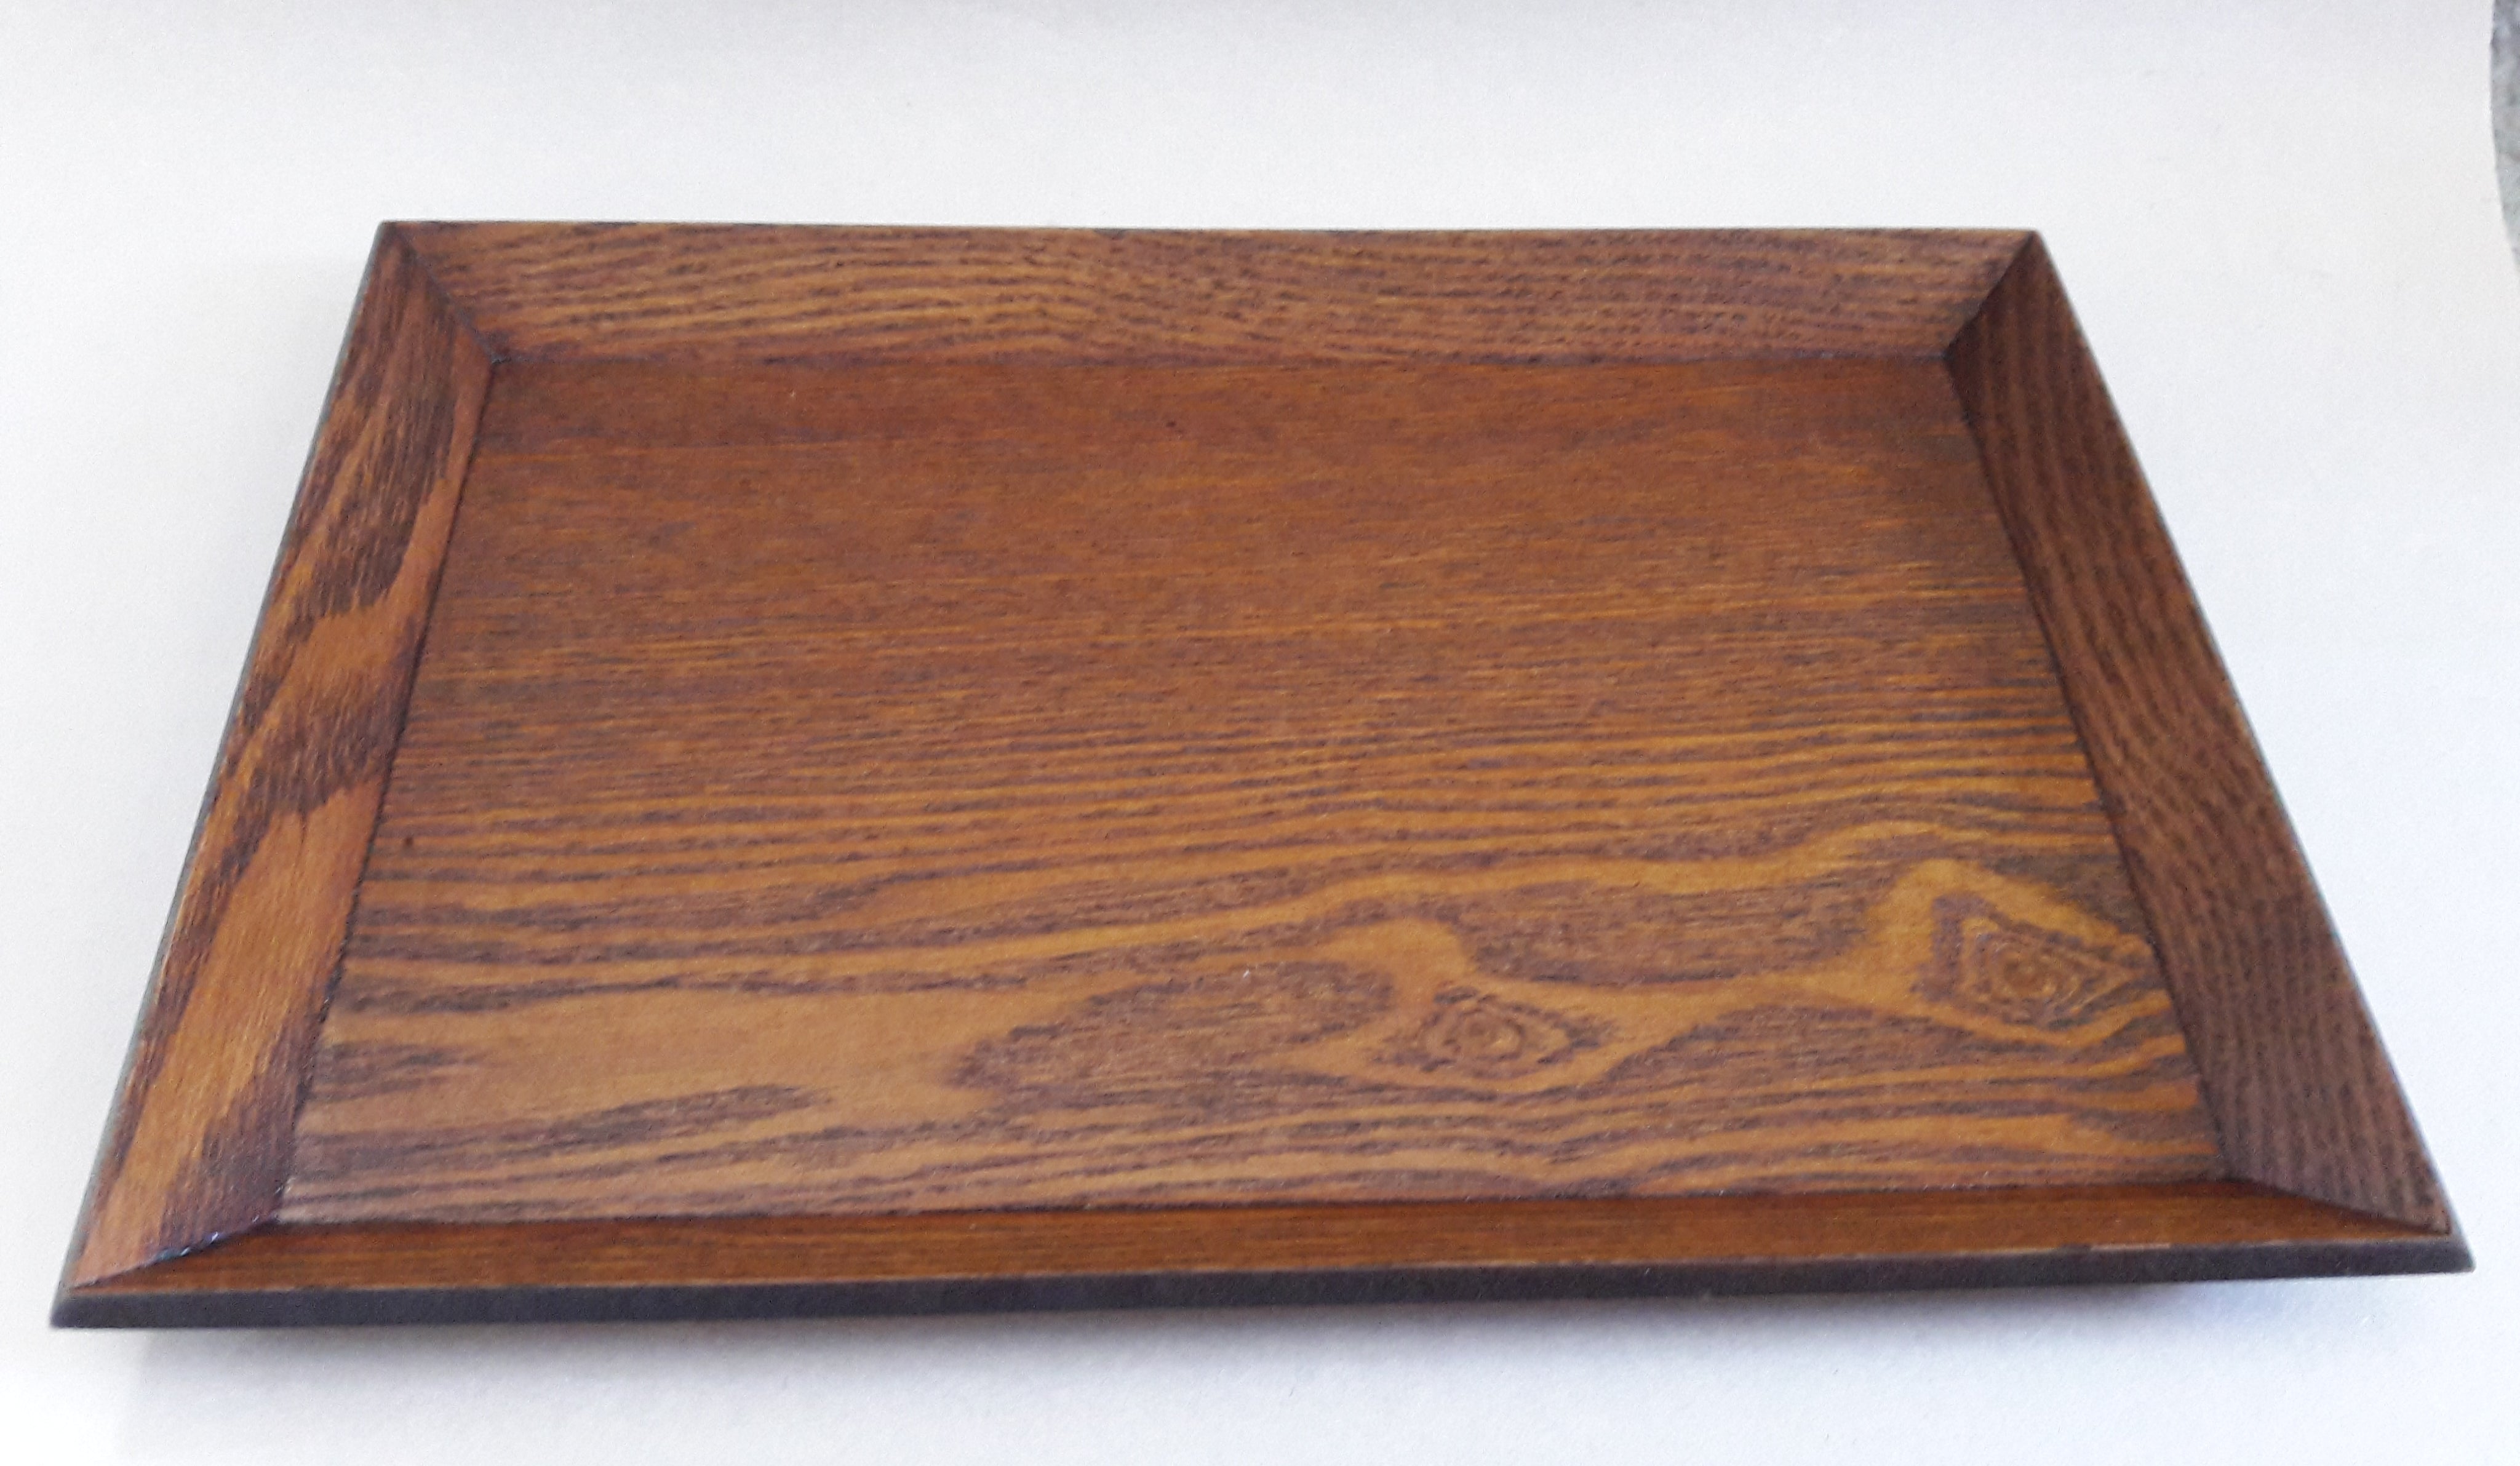 Wooden Tea Tray, L. 11.75"(30cm) X W. 7.875"(20cm) X .75"(2cm)